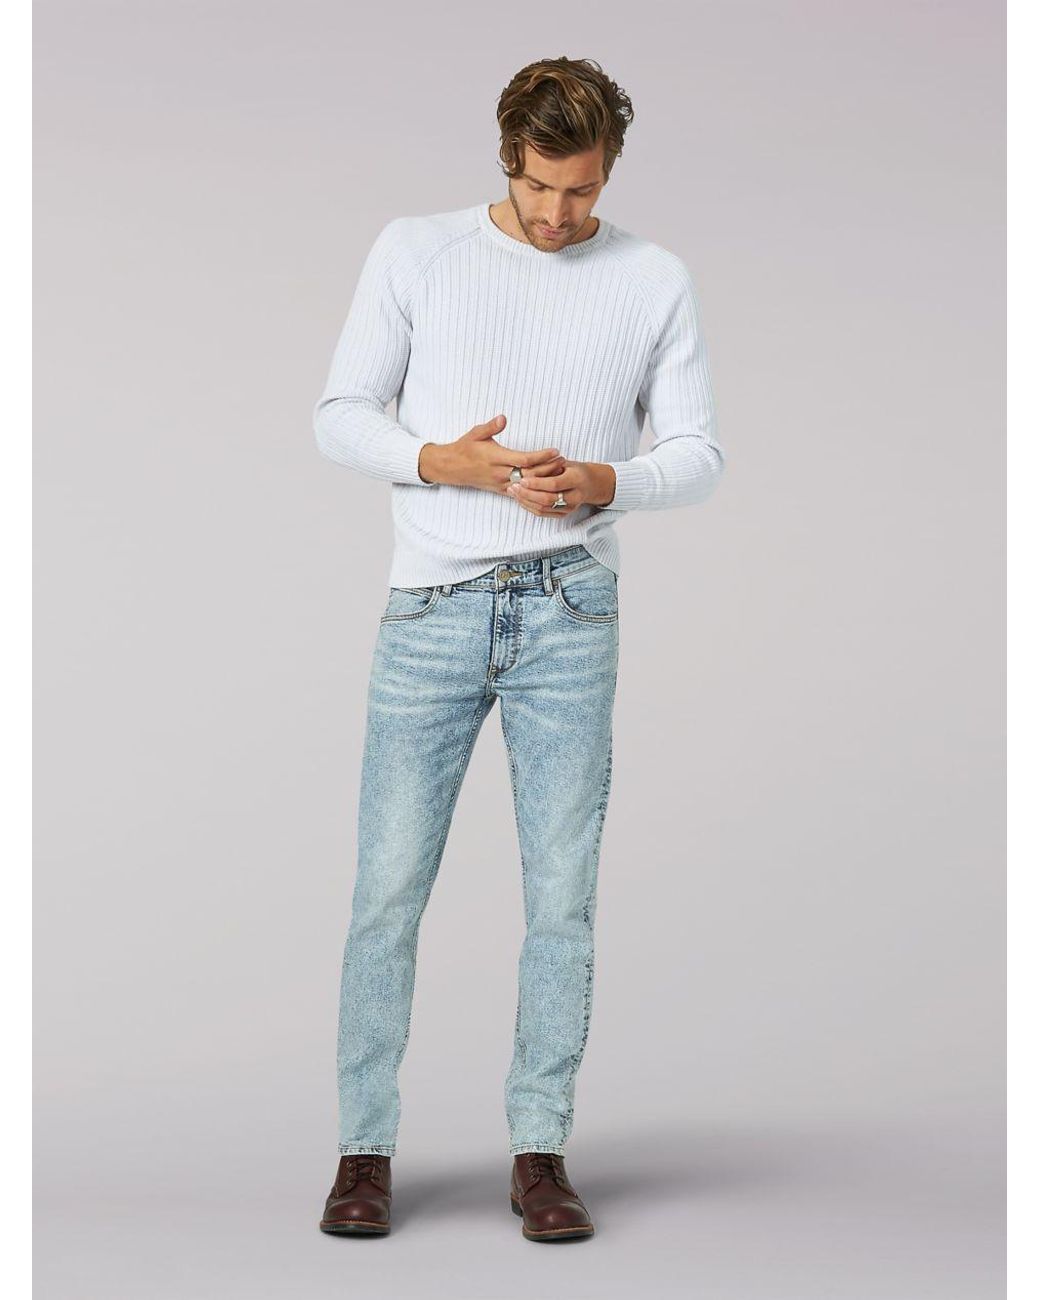 Lee Jeans Denim Vintage Modern Slim Fit Tapered Jeans in Blue for Men - Lyst